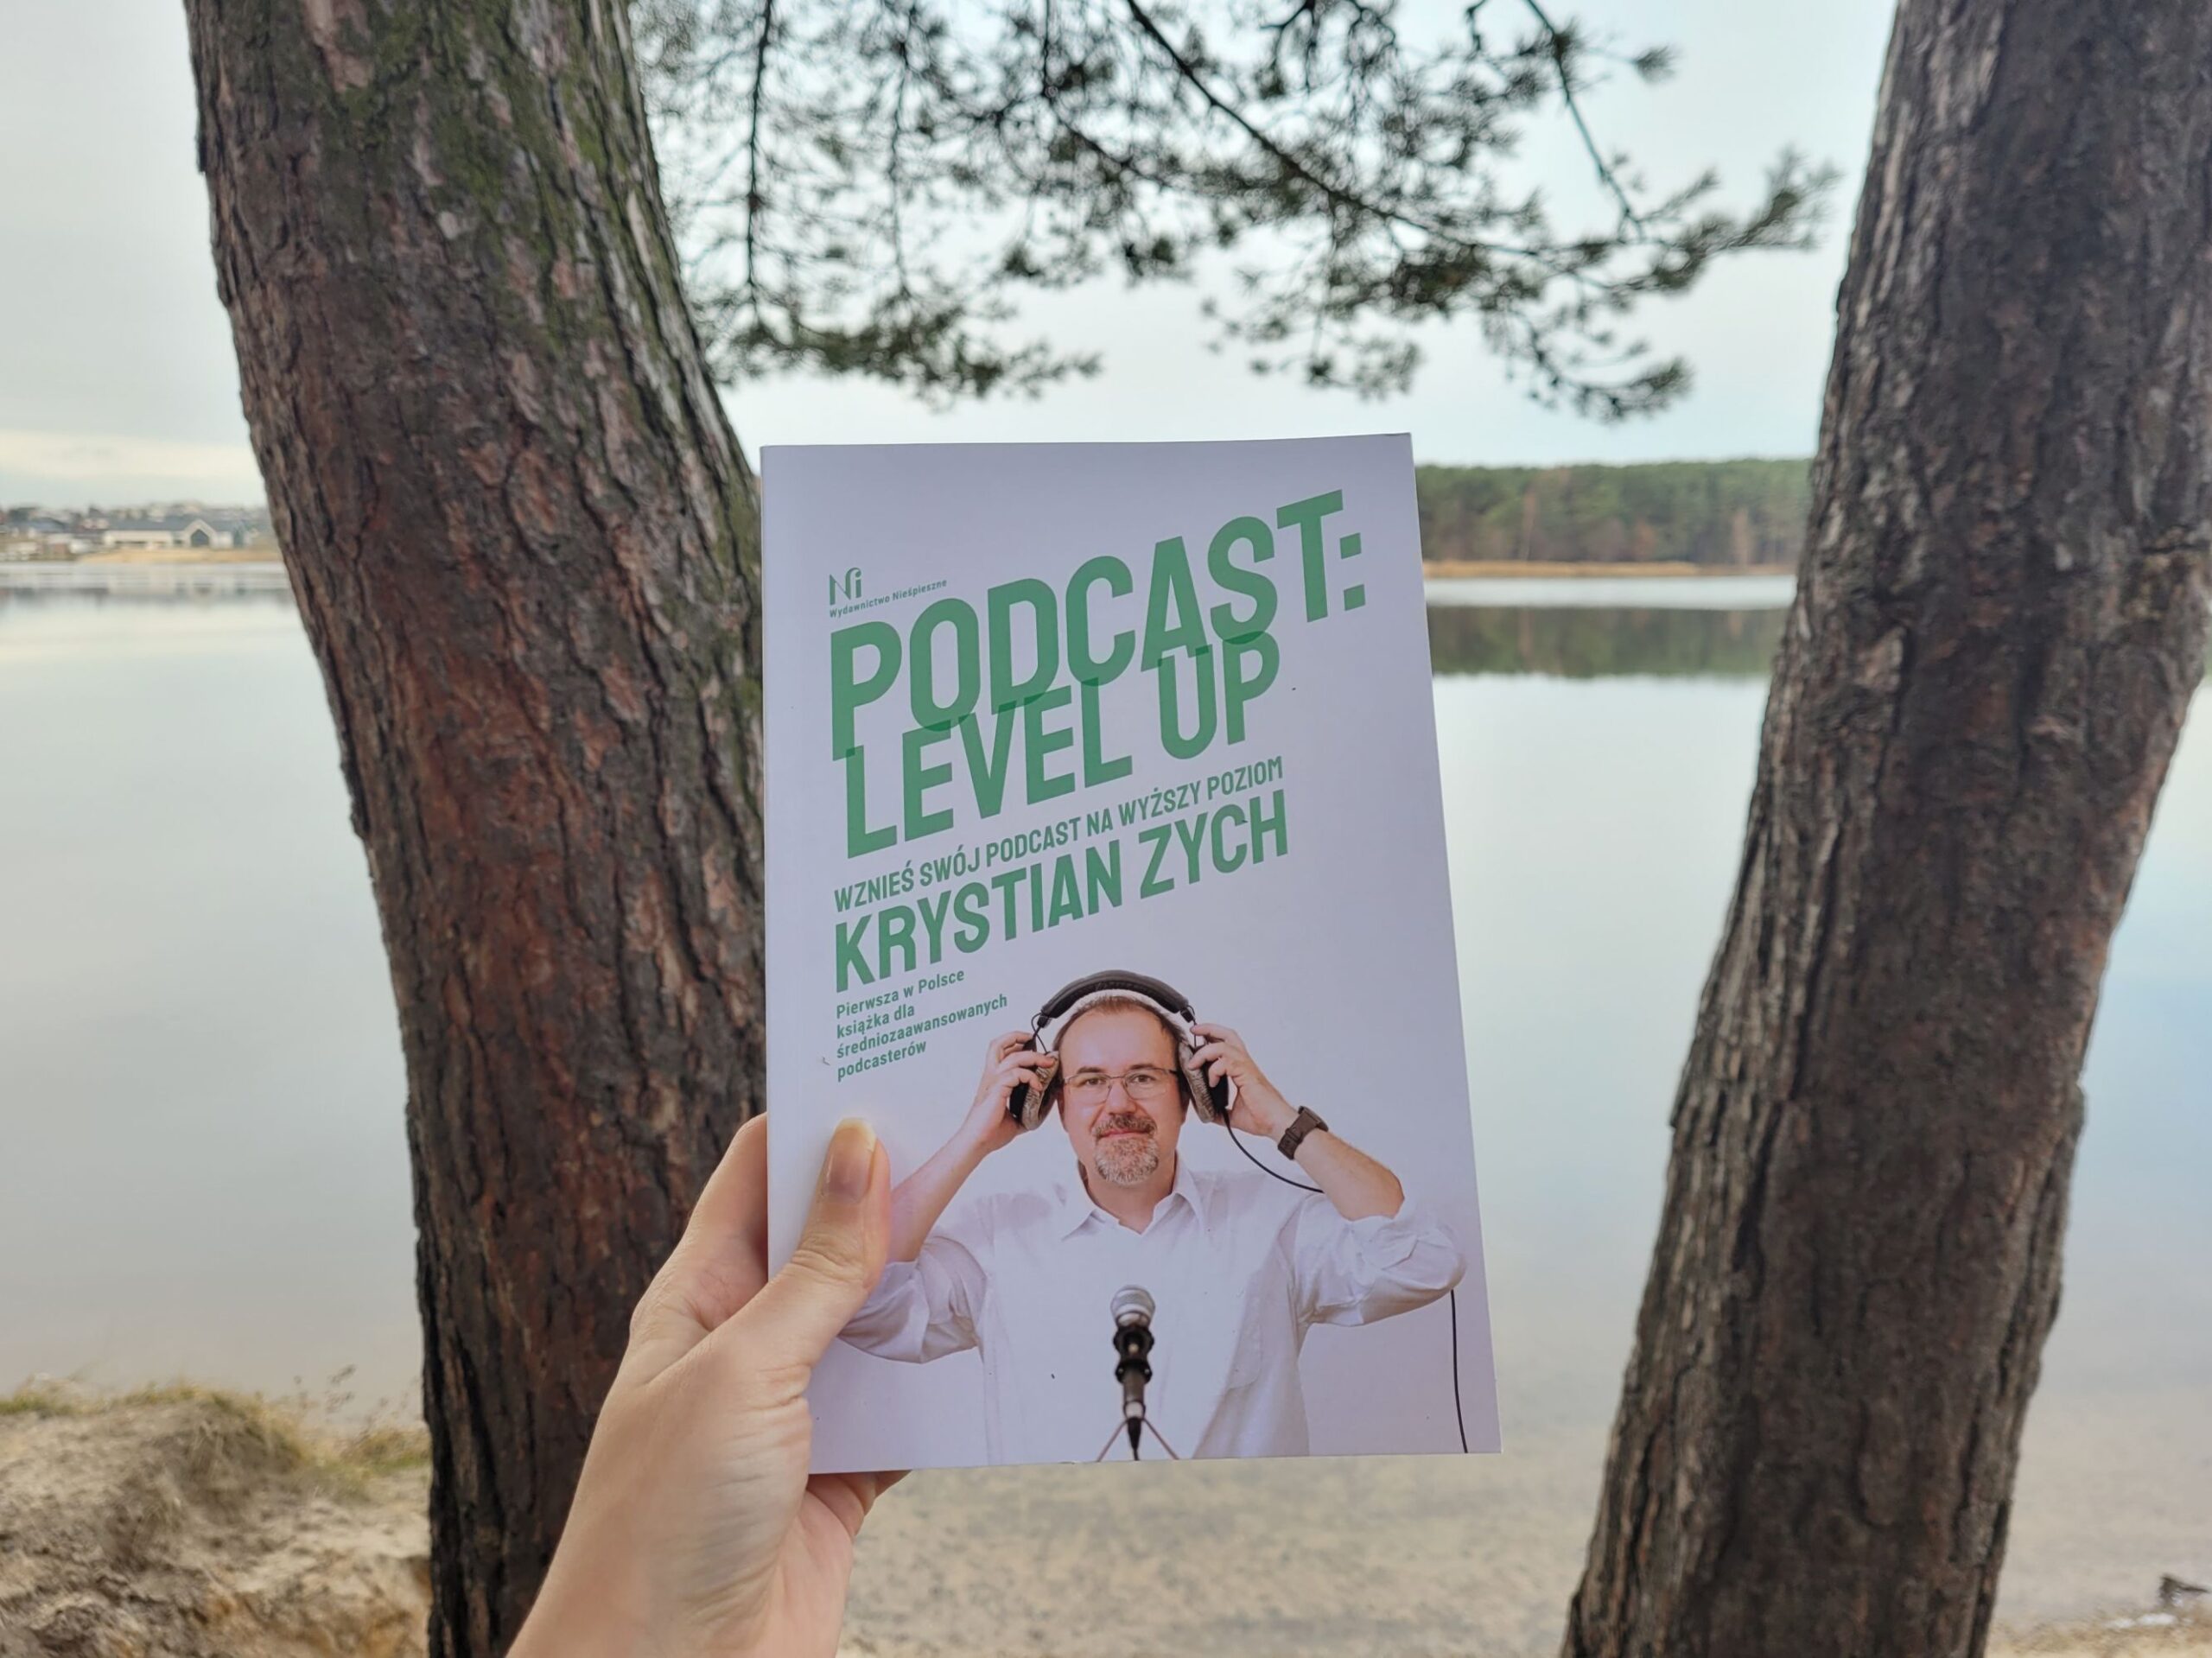 Podcast Level Up — Krystian Zych — recenzja